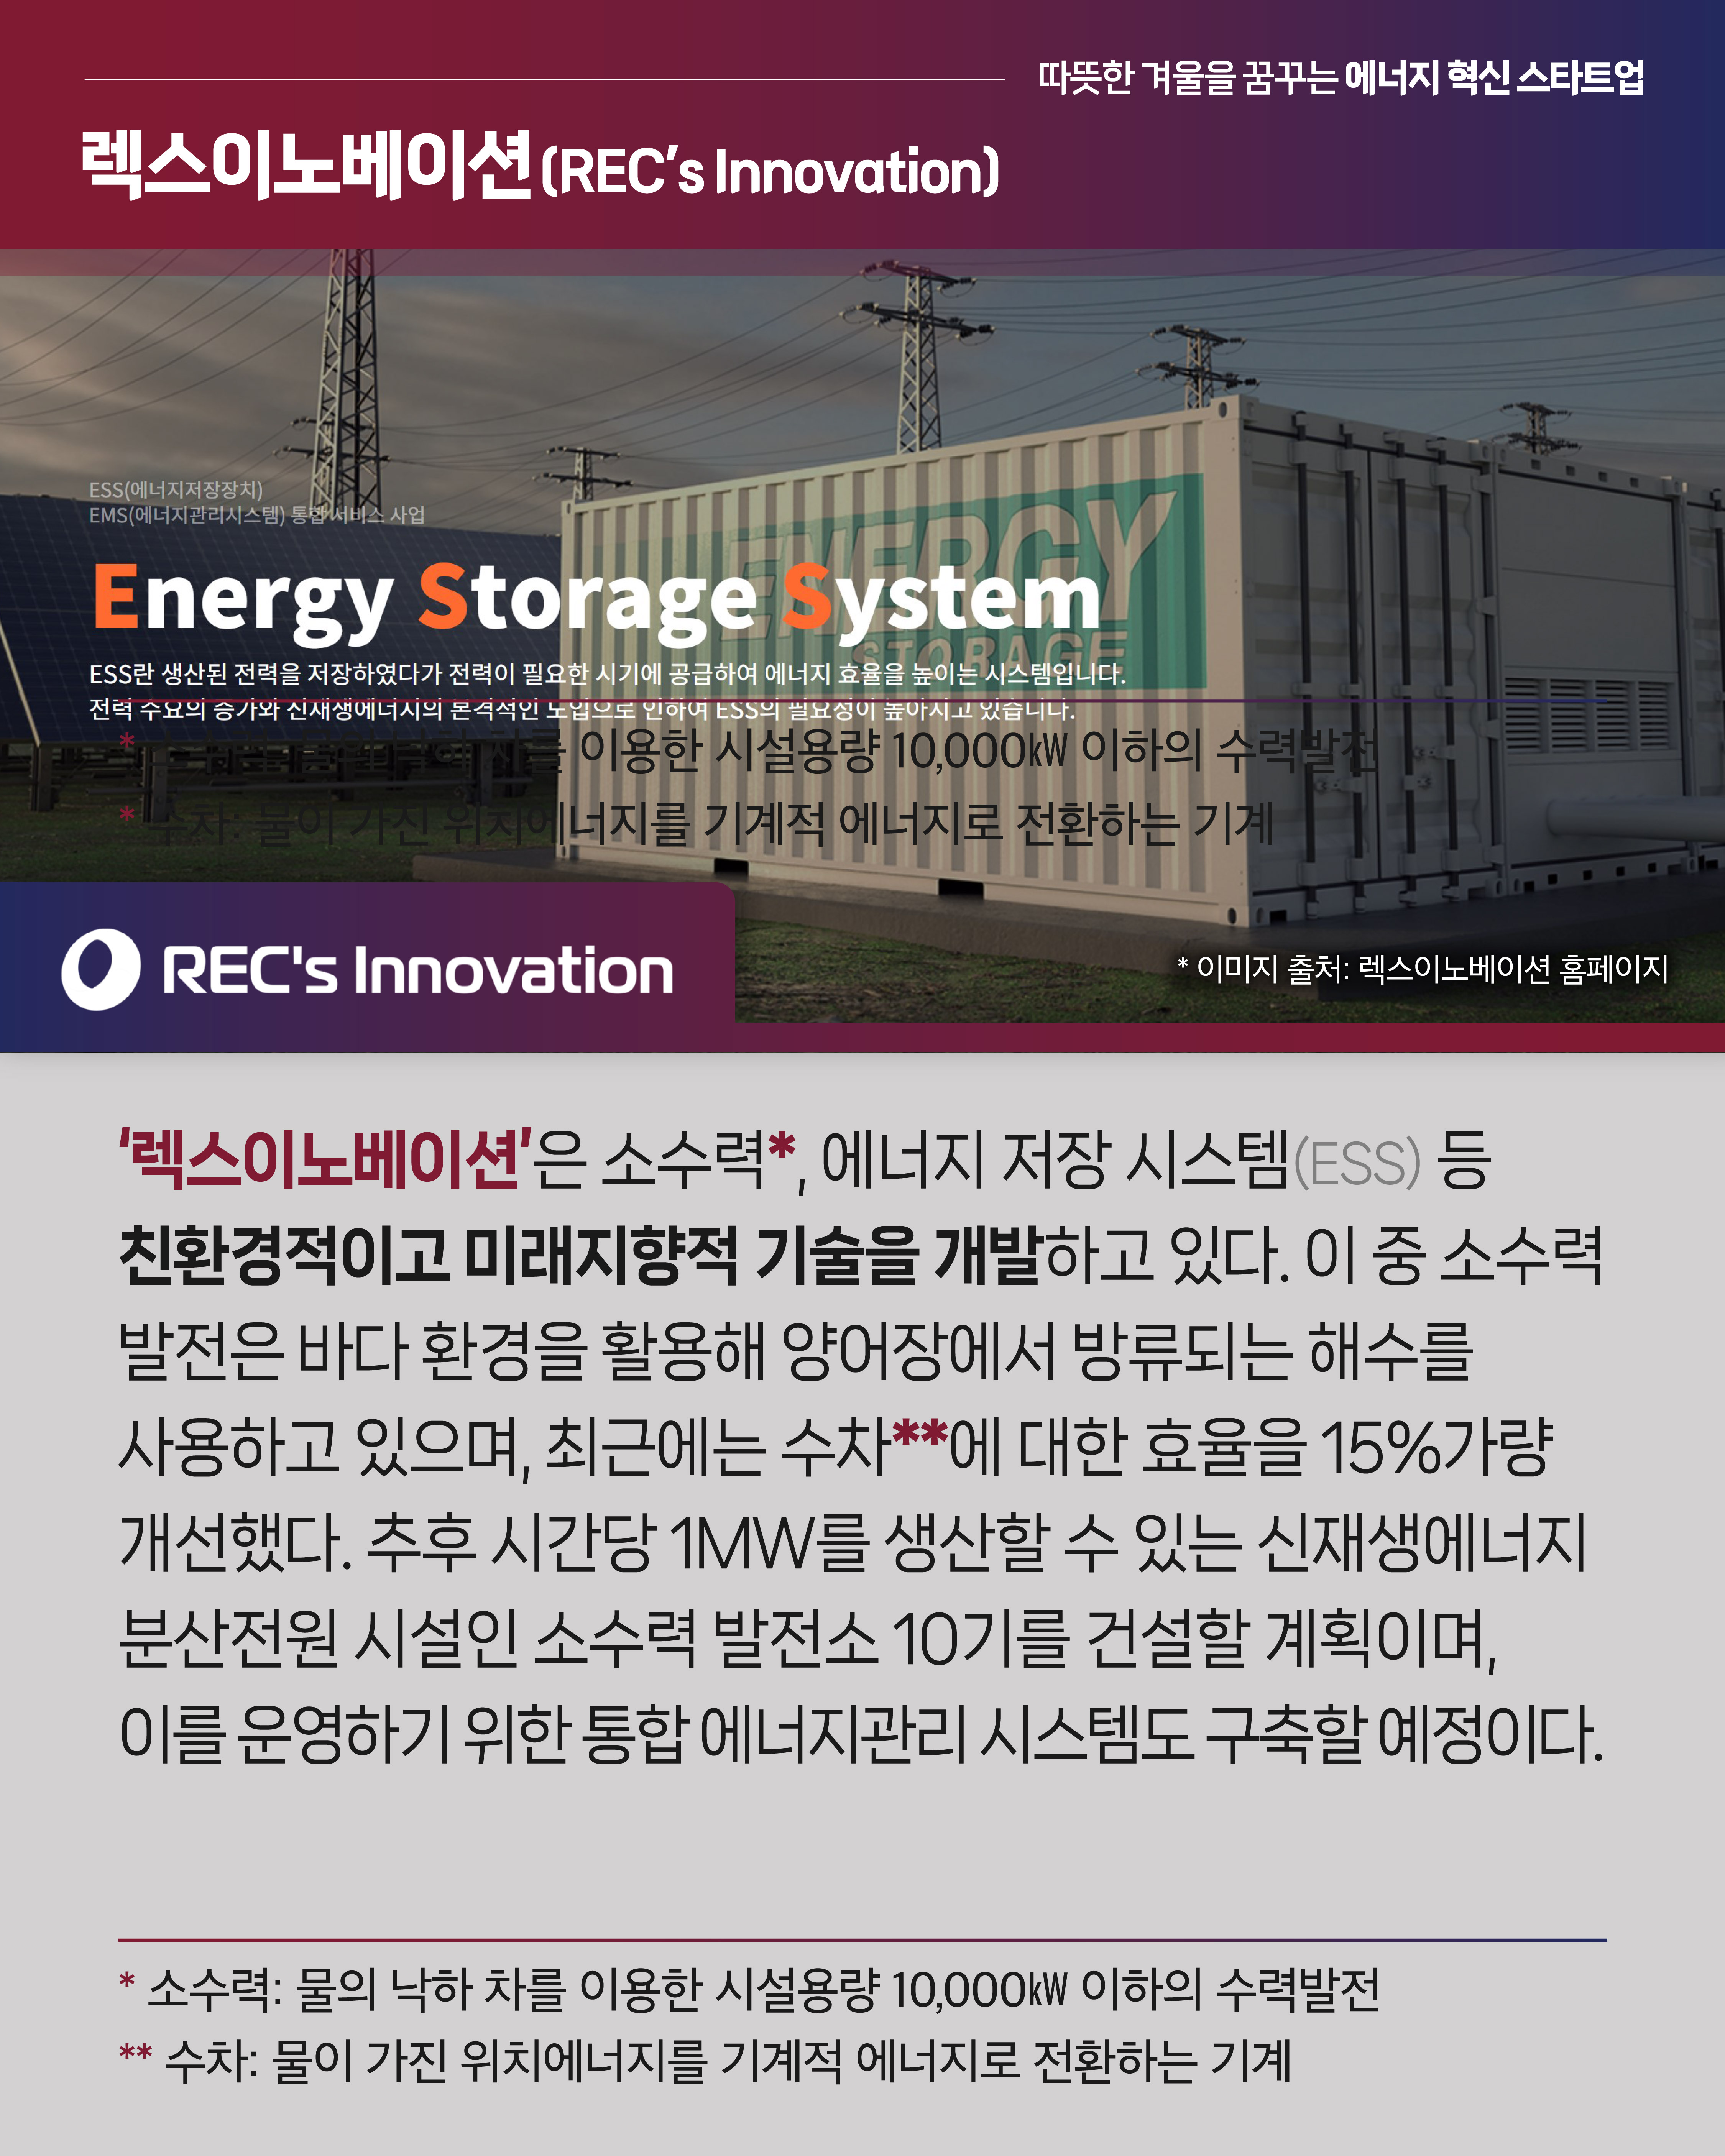 따뜻한 겨울을 꿈꾸는 에너지 혁신 스타트업
<렉스이노베이션> Energy Storage System
ESS란 생산된 전력을 저장하였다가 전력이 필요한 시기에 공급하여 에너지 효율을 높이는 시스템입니다.
전력 수요의 증가와 신재생 에너지의 본격적인 도입으로 인하여 ESS의 필요성이 높아지고 있습니다.

‘렉스이노베이션’은 소수력*, 에너지 저장 시스템(ESS) 등 친환경적이고 미래지향적 기술을 개발하고 있다. 이 중 소수력 발전은 바다 환경을 활용해 양어장에서 방류되는 해수를 사용하고 있으며, 최근에는 수차**에 대한 효율을 15%가량 개선했다. 추후 시간당 1MW를 생산할 수 있는 신재생에너지 분산전원 시설인 소수력 발전소 10기를 건설할 계획이며, 이를 운영하기 위한 통합 에너지관리 시스템도 구축할 예정이다.   
*소수력: 물의 낙하 차를 이용한 시설용량 10,000㎾ 이하의 수력발전
**수차: 물이 가진 위치에너지를 기계적 에너지로 전환하는 기계
